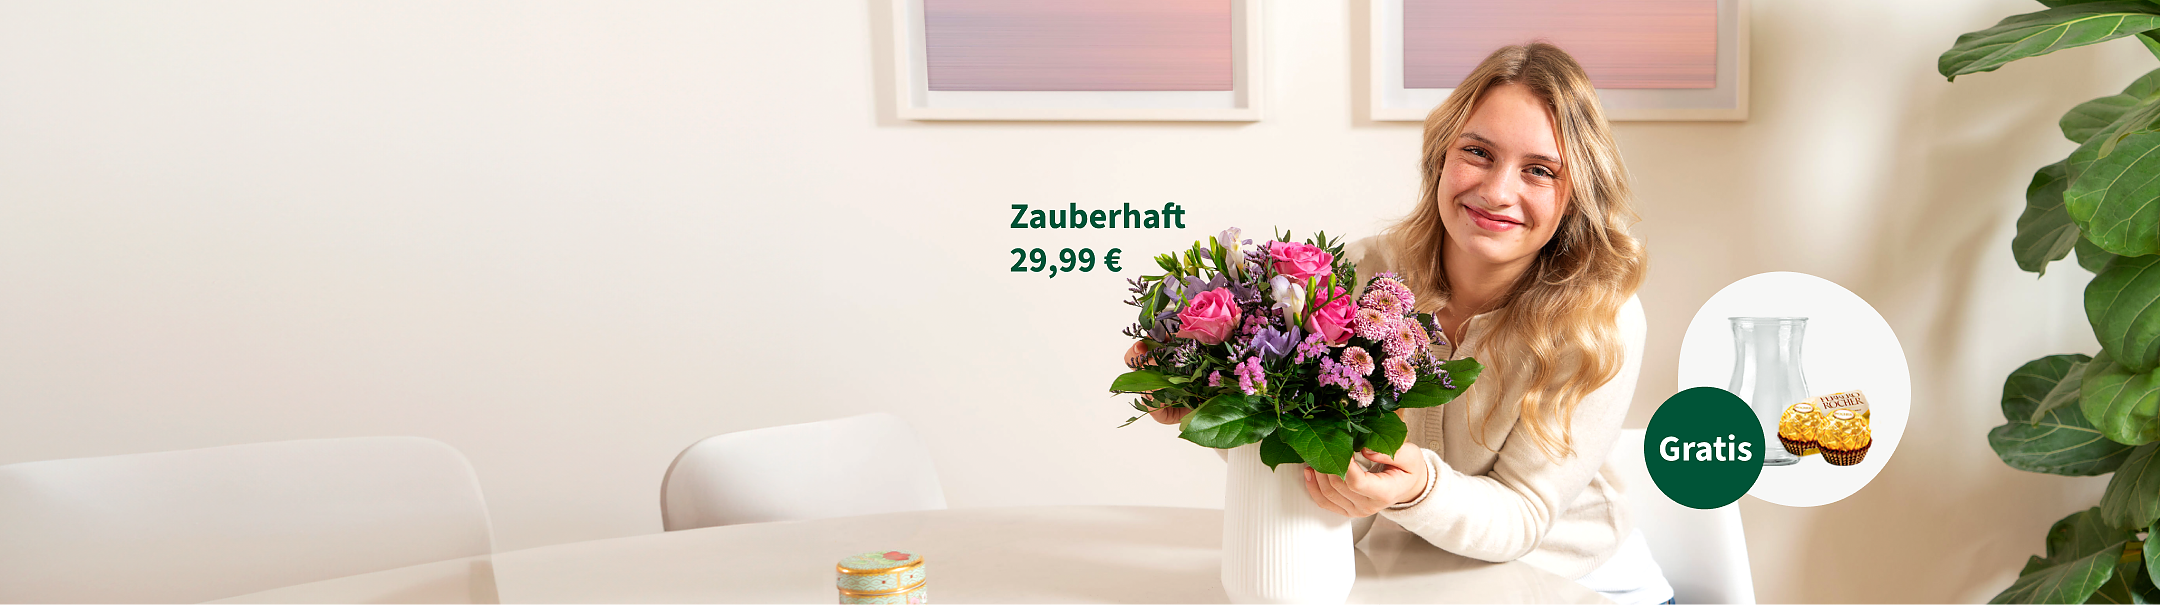 Blumenstrauß Zauberhaft für 29,99 €